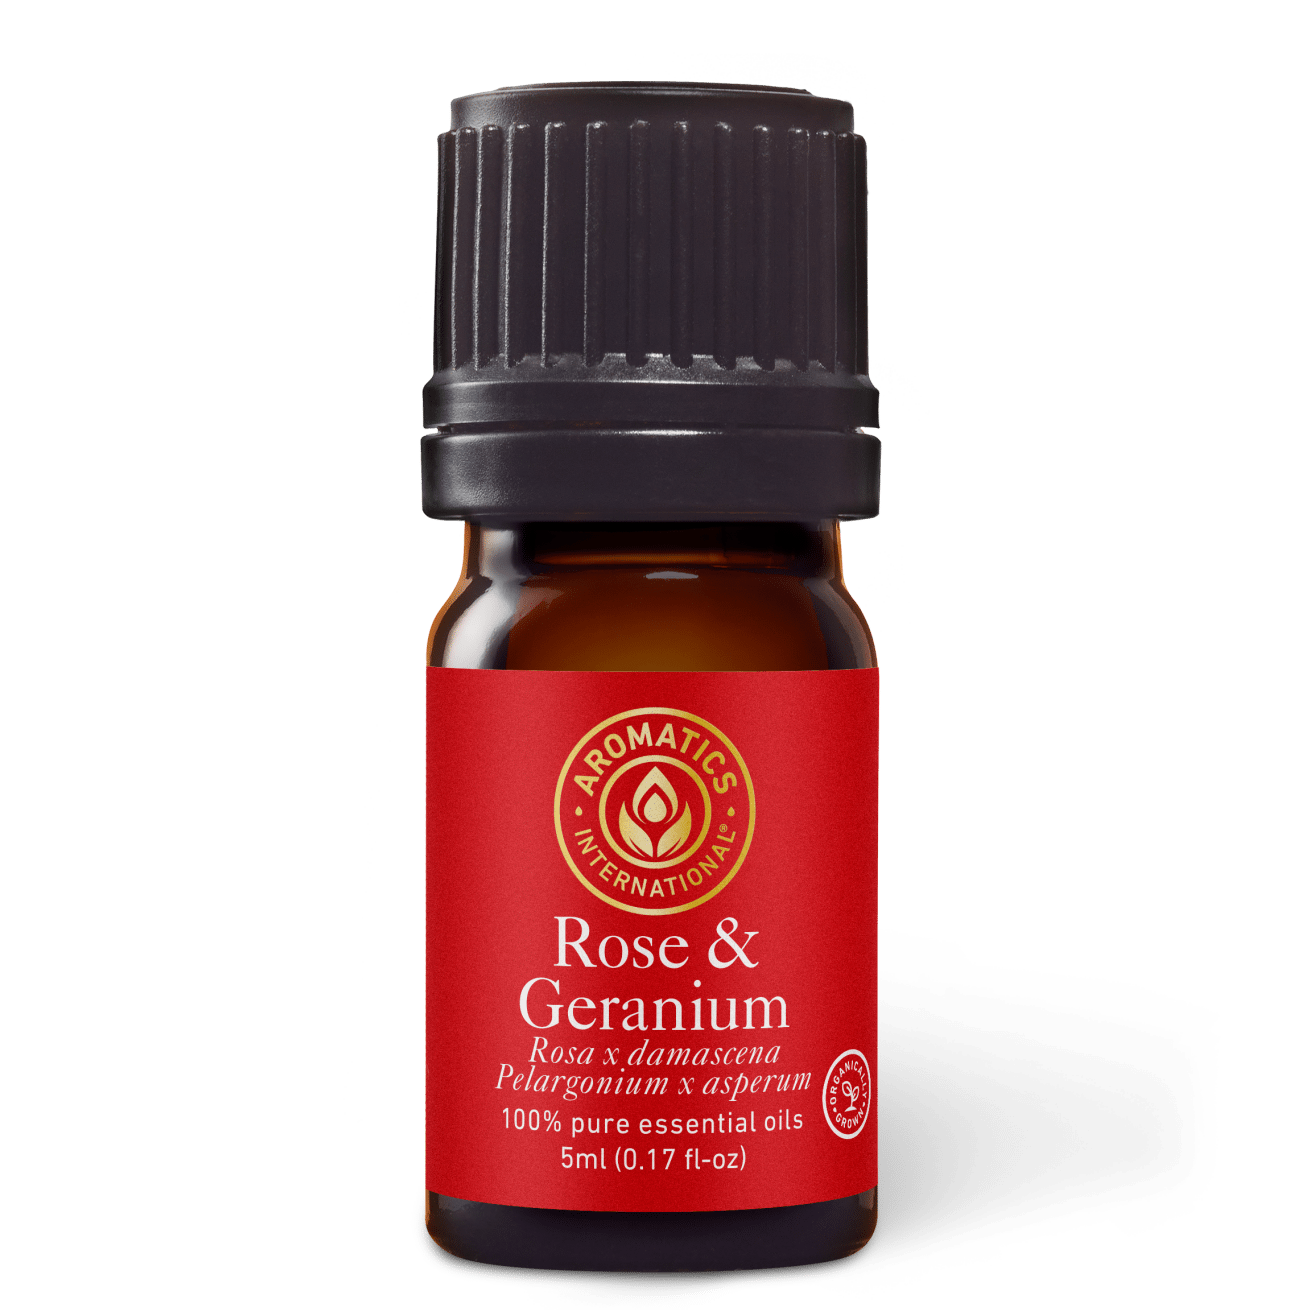 Rose and Geranium Essential Oil - 5ml - Essential Oil Singles - Aromatics International